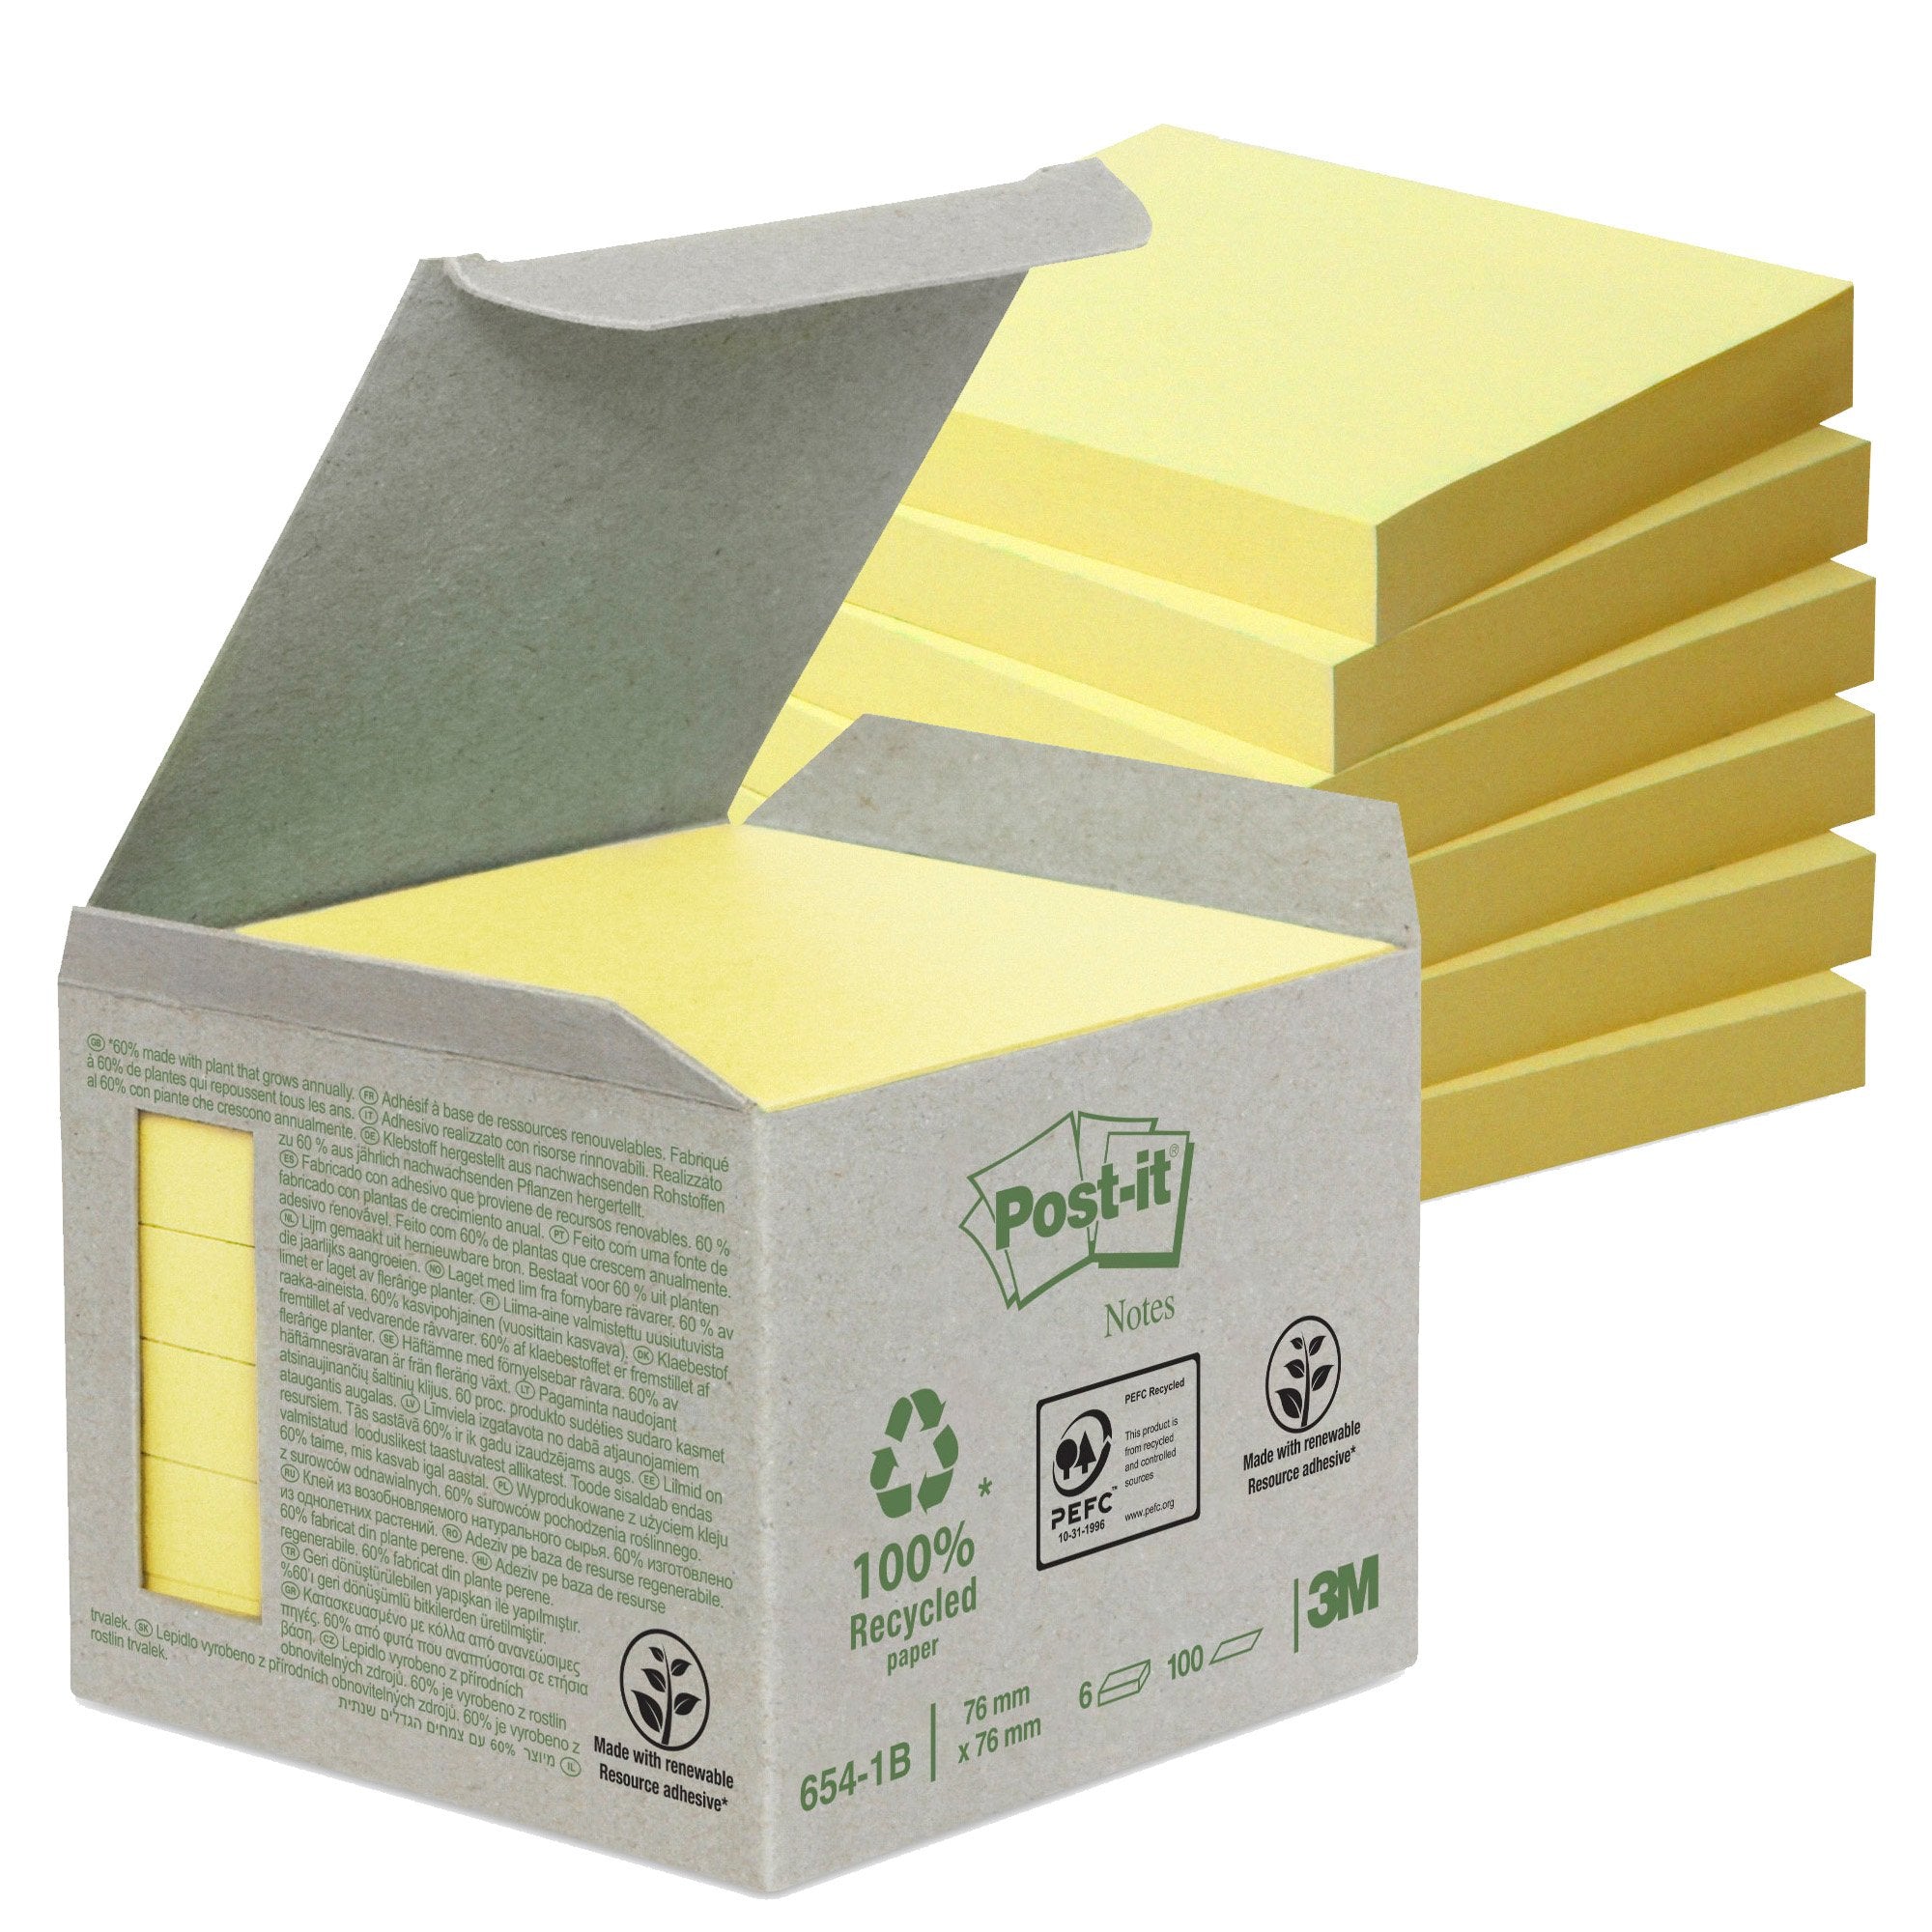 post-it-blocco-100foglietti-notes-green-76x76mm-654-1b-giallo